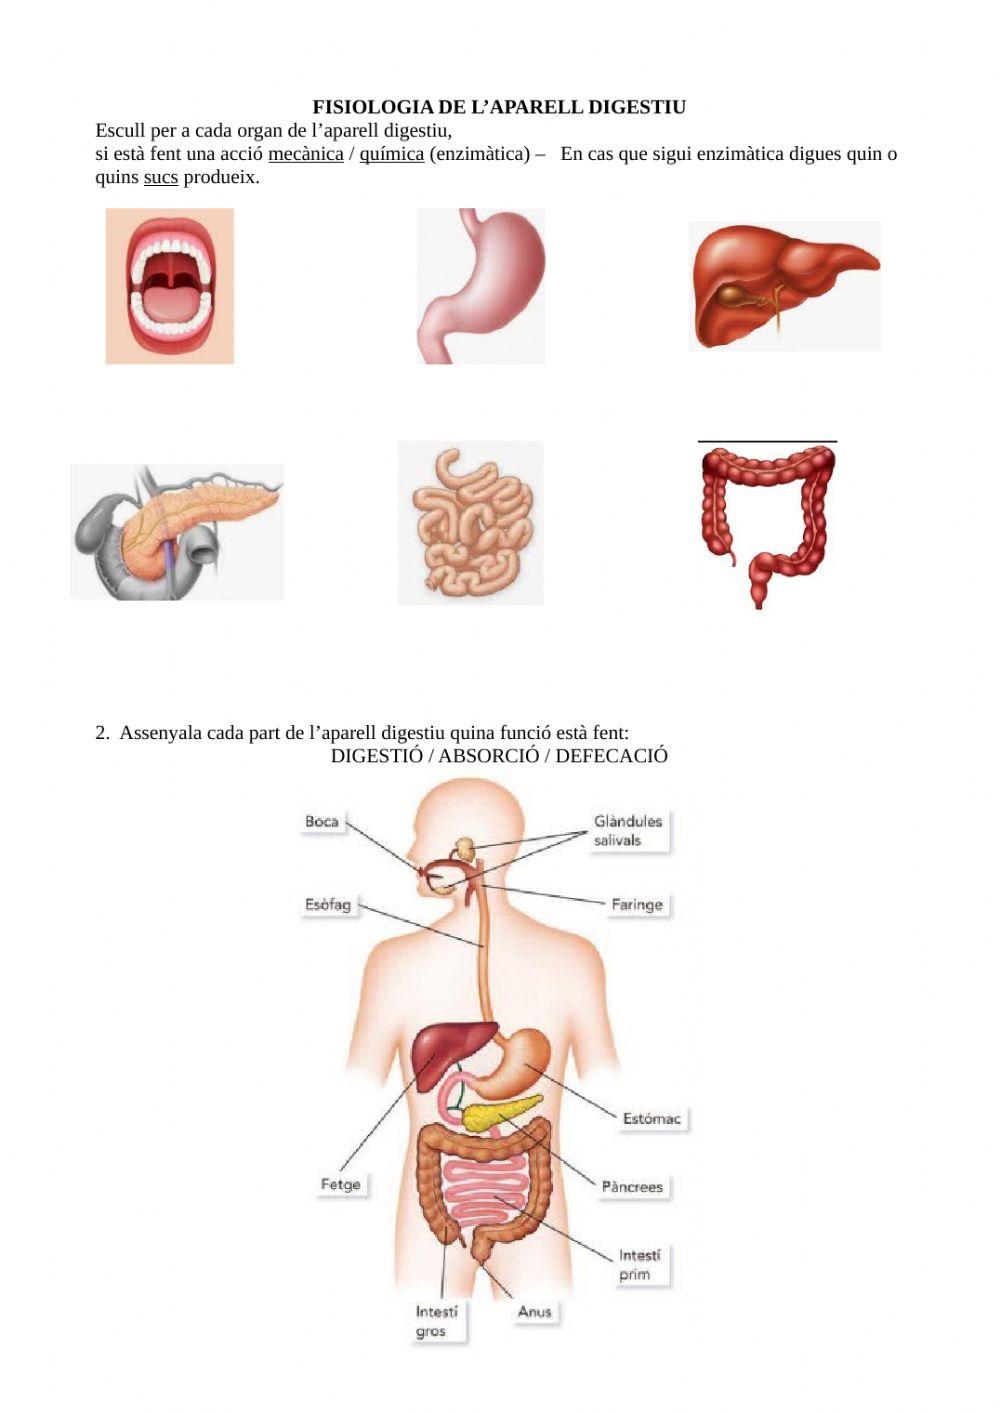 Fisiologia del digestiu